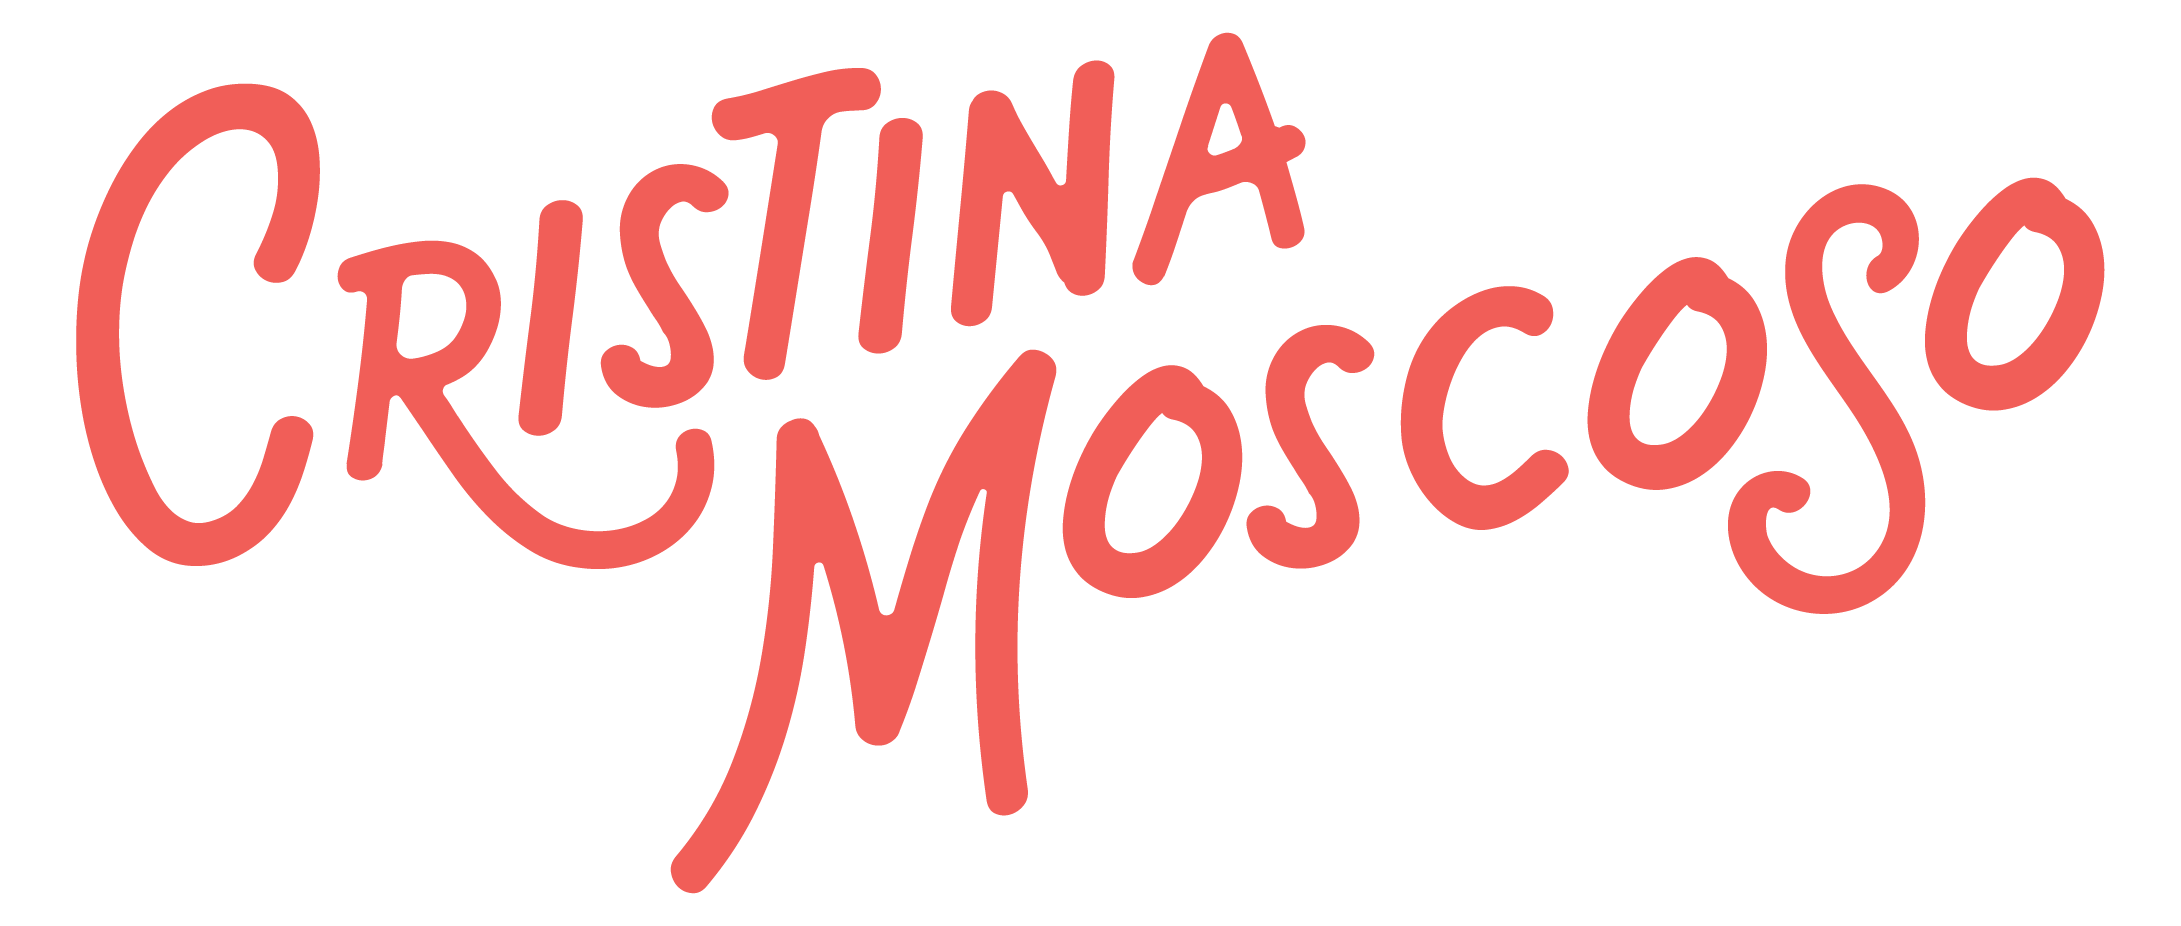 Cristina Moscoso